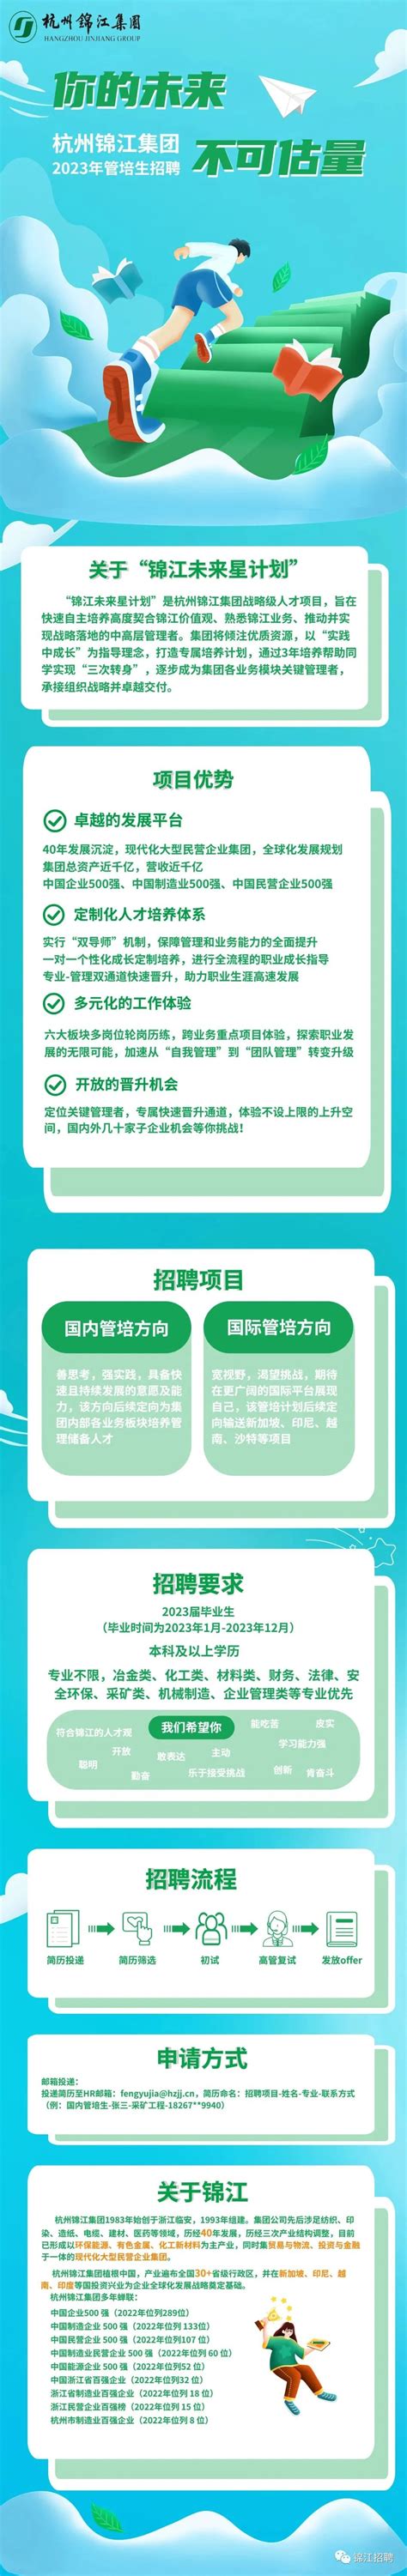 杭州锦江集团2023年管培生招聘公告